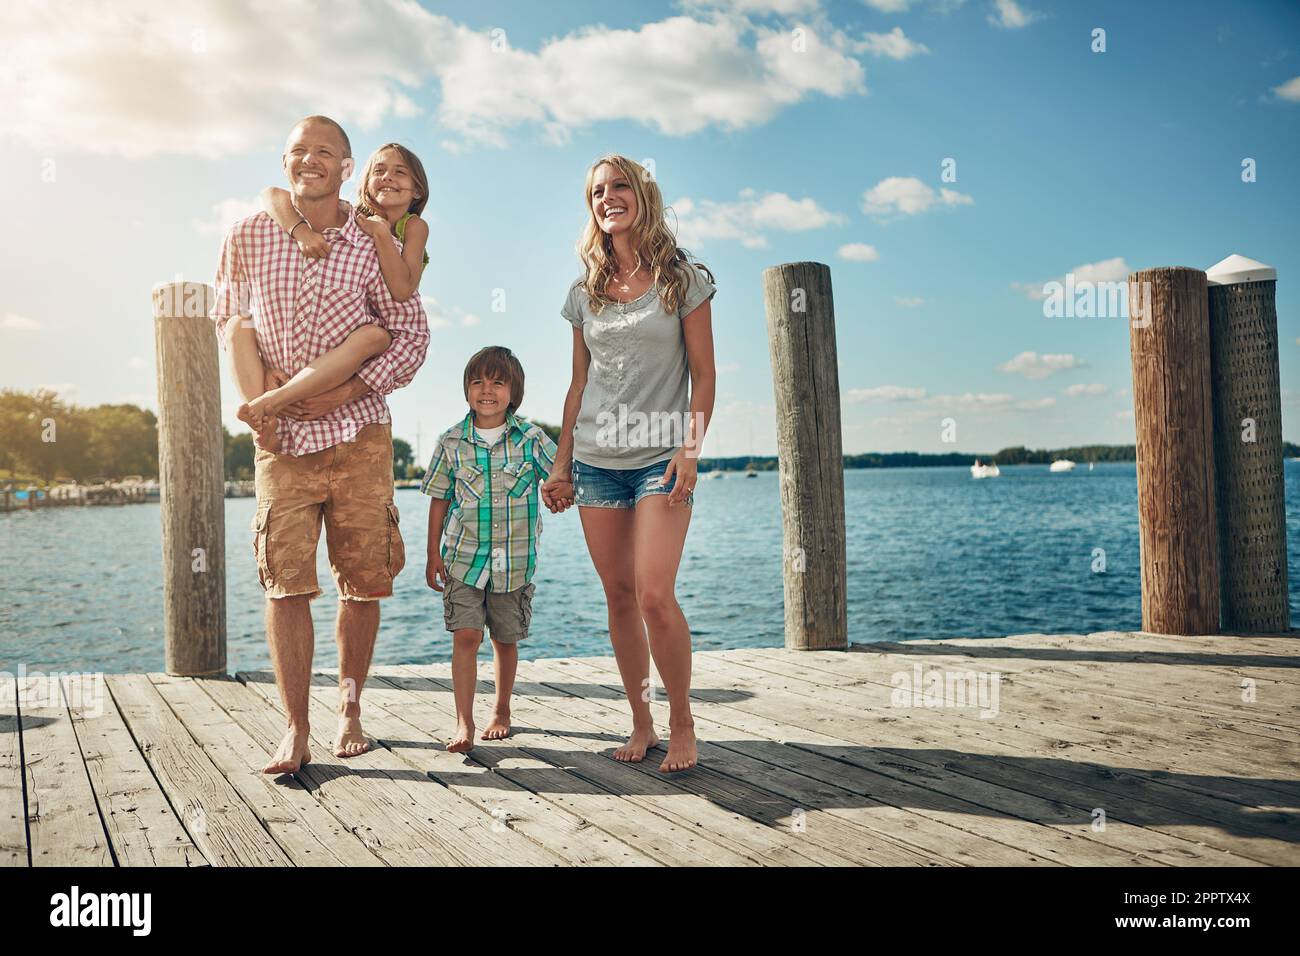 Zeit mit der Familie zu verbringen, ist Zeit, die gut verbracht wird. Eine junge Familie auf einem Pier am See. Stockfoto